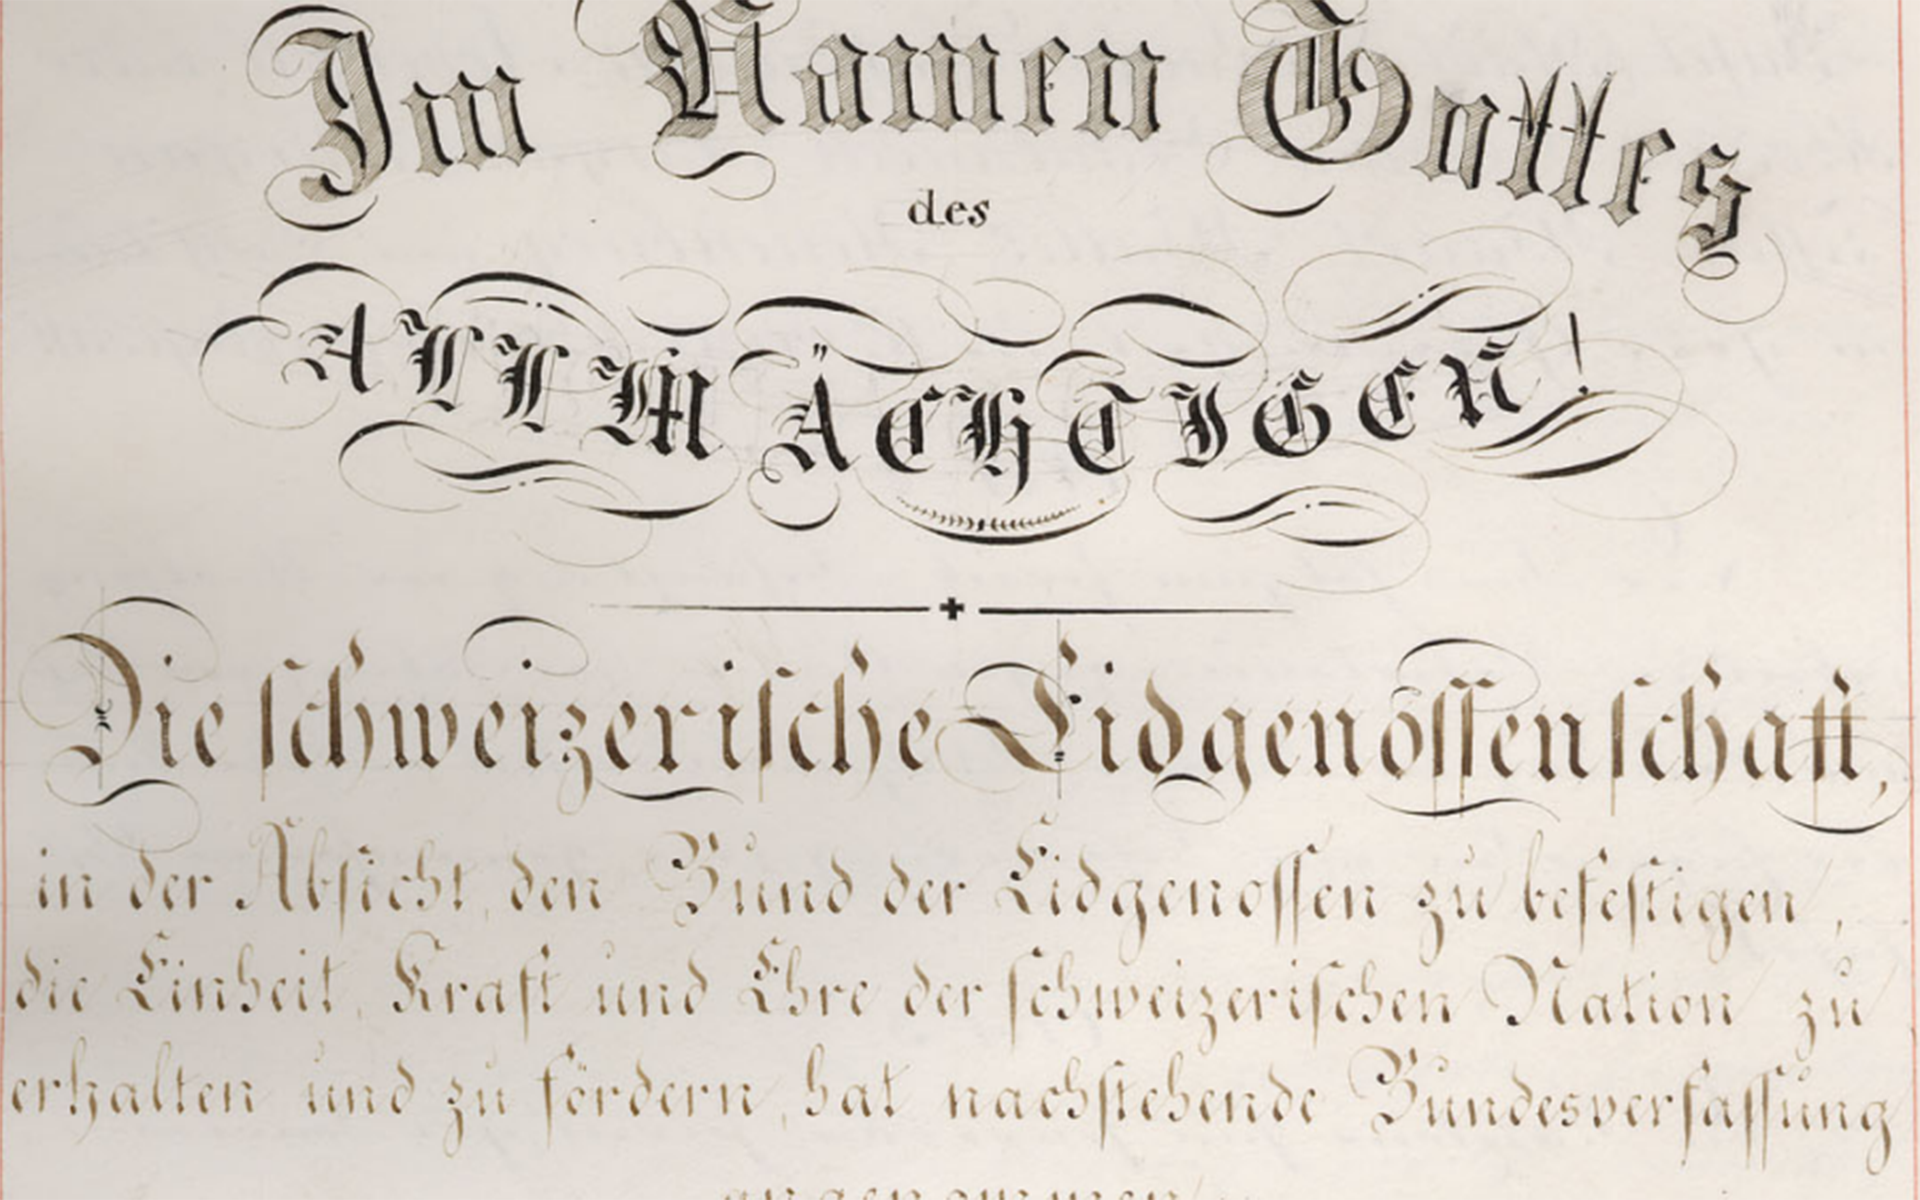 Die Gründung des Schweizerischen Bundesstaates vor 175 Jahren bildet auch den Beginn der Bundesverwaltung (Abschnitt der Präambel der originalen Bundesverfassung von 1848; Quelle: Bundesversammlung)